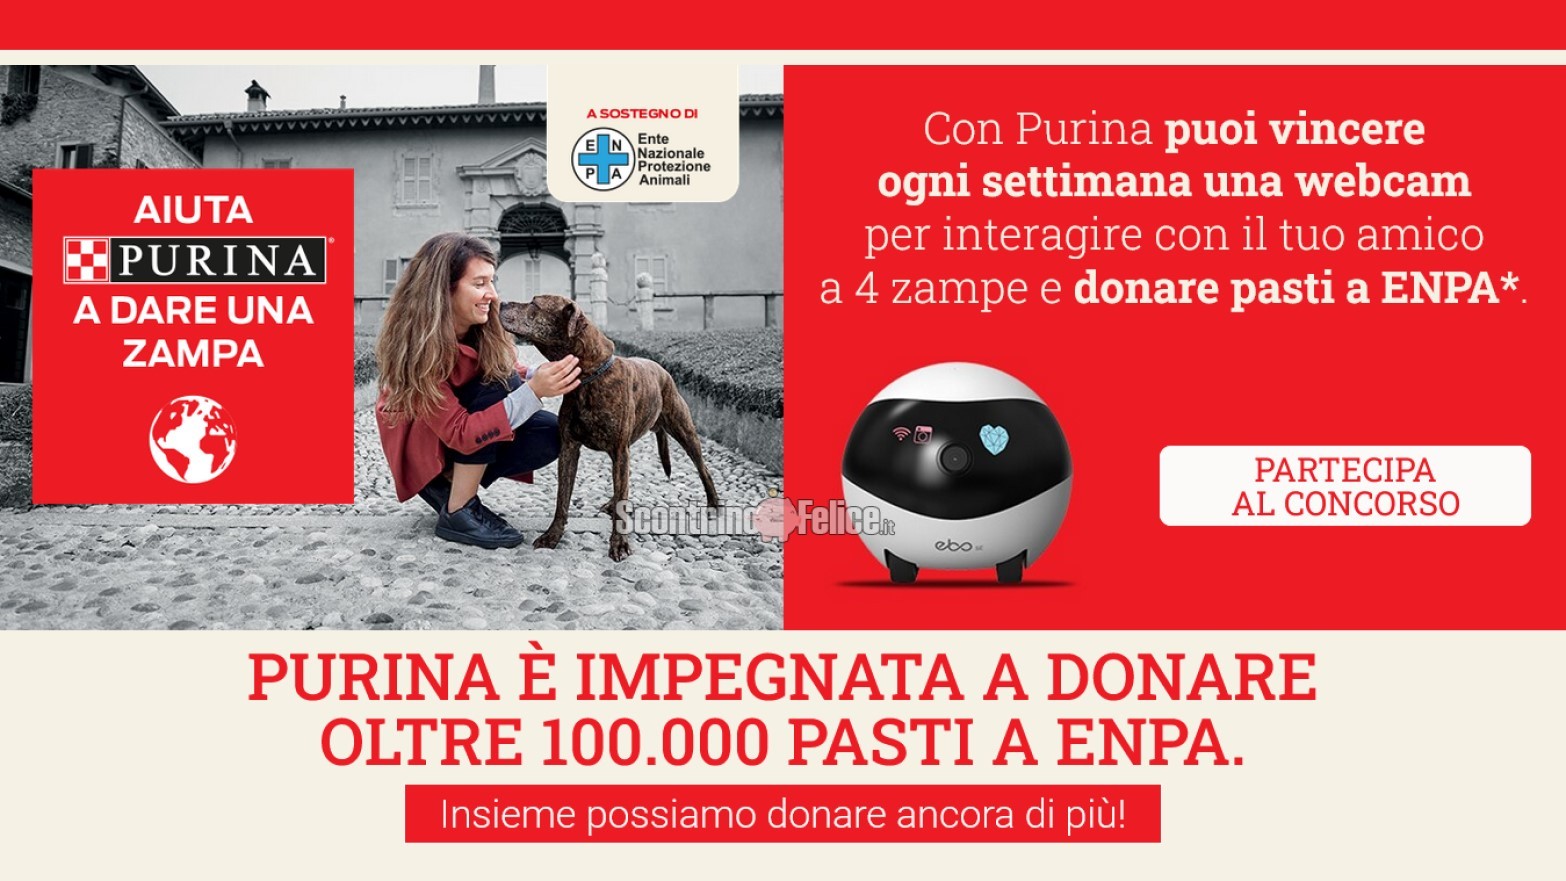 Concorso "Aiuta Purina a dare una zampa": vinci webcam Enabot EBO-SE